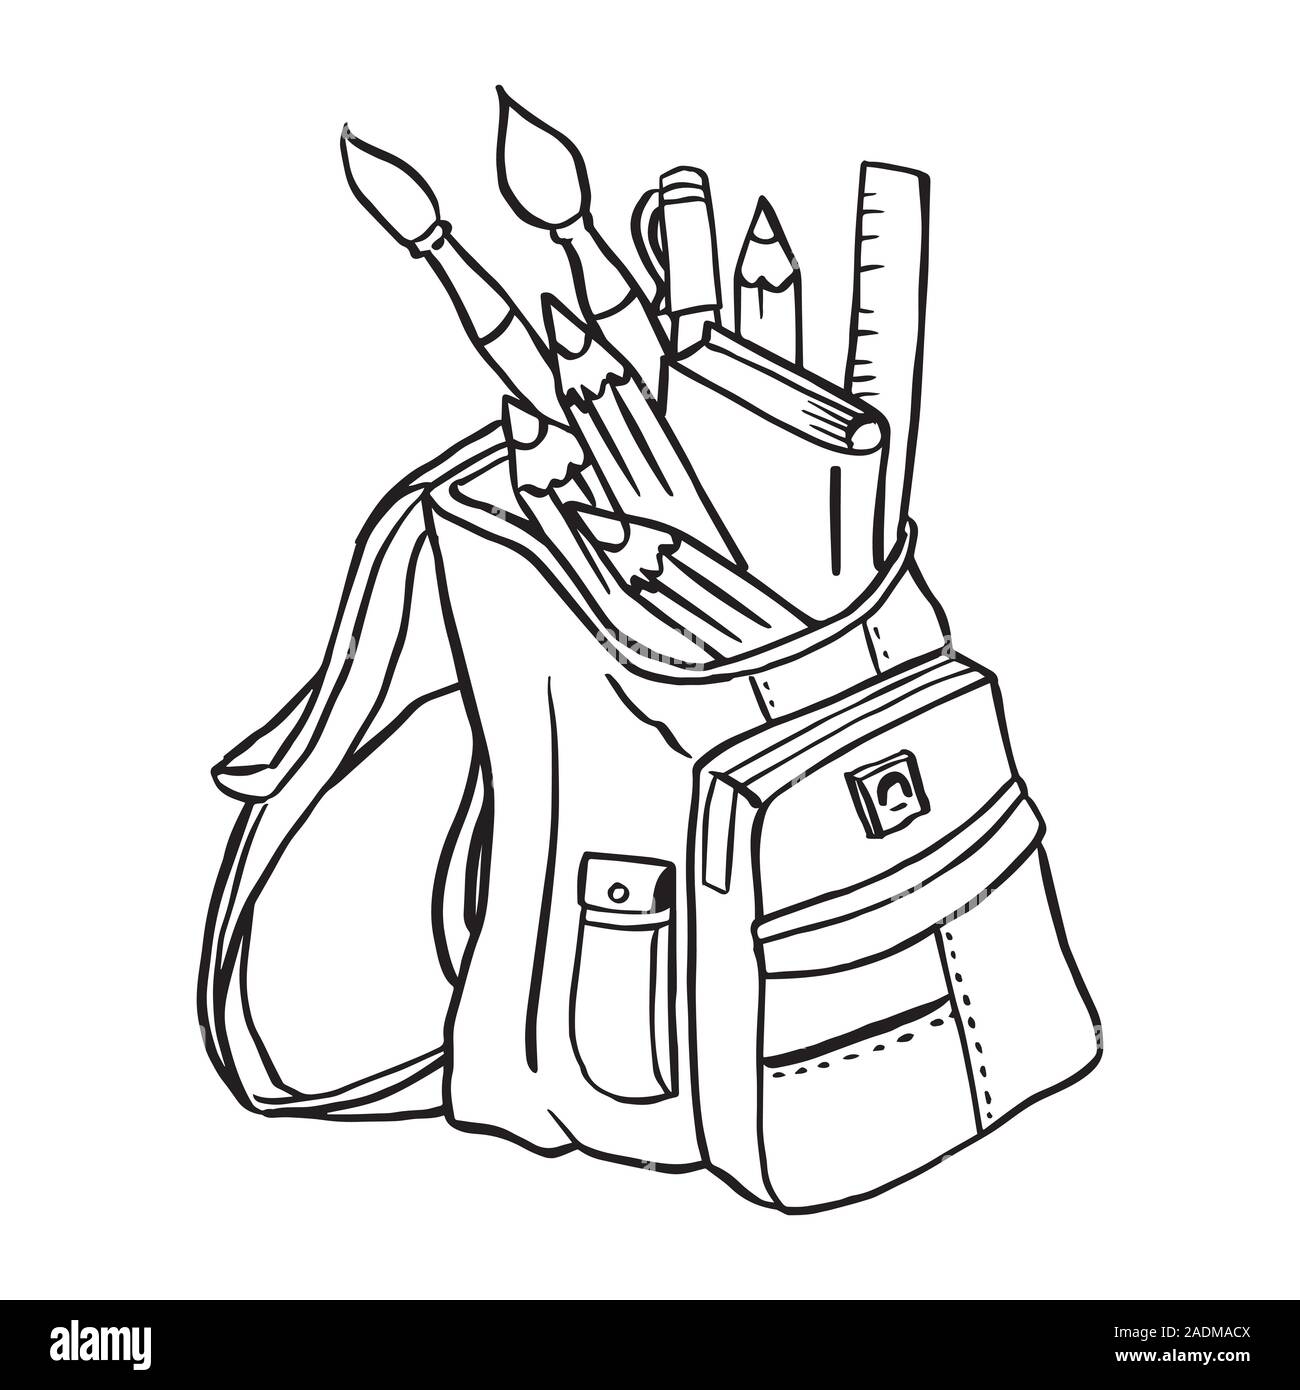 Rucksack voll gepackt mit Schule Punkte auf weißem Hintergrund, Schultasche, Student, Verbrauchsmaterial, Skizze doodle Stil, zurück in die Schule - Hand Vec gezogen Stock Vektor